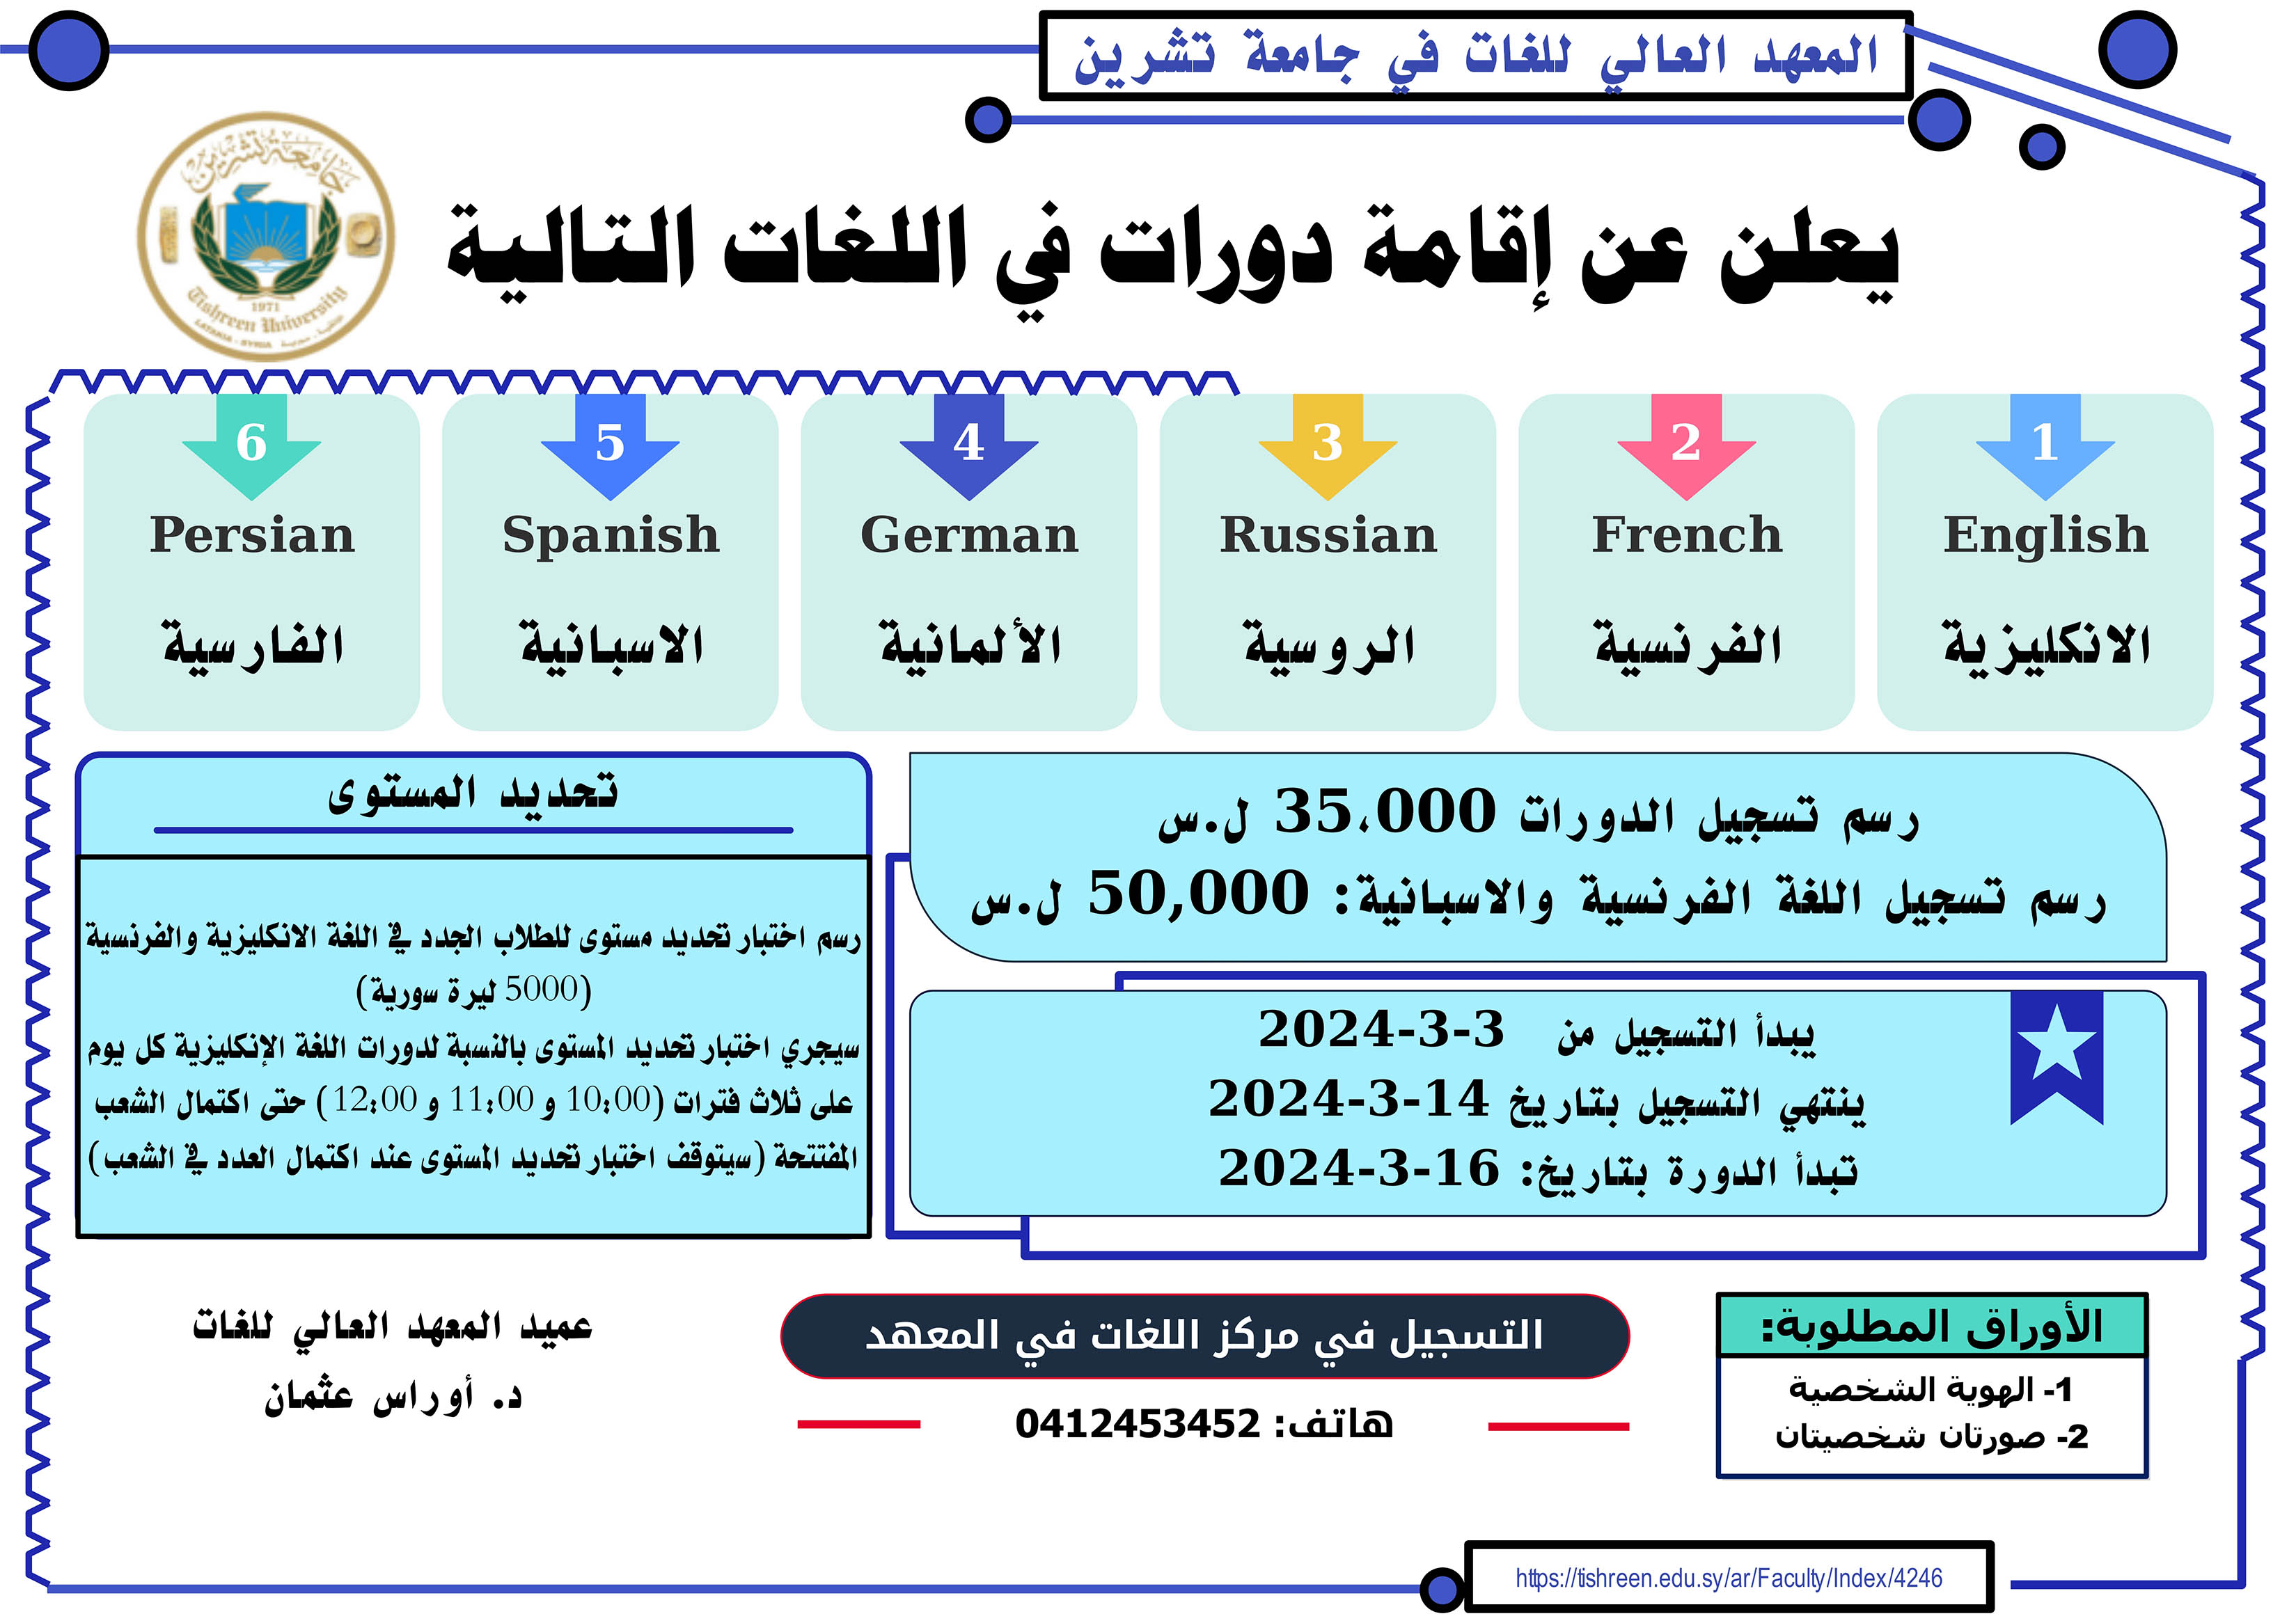 المعهد العالي للغات يعلن عن موعد التسجيل لدورات اللغات الأجنبية التي ستبدأ بتاريخ 16-03-2024